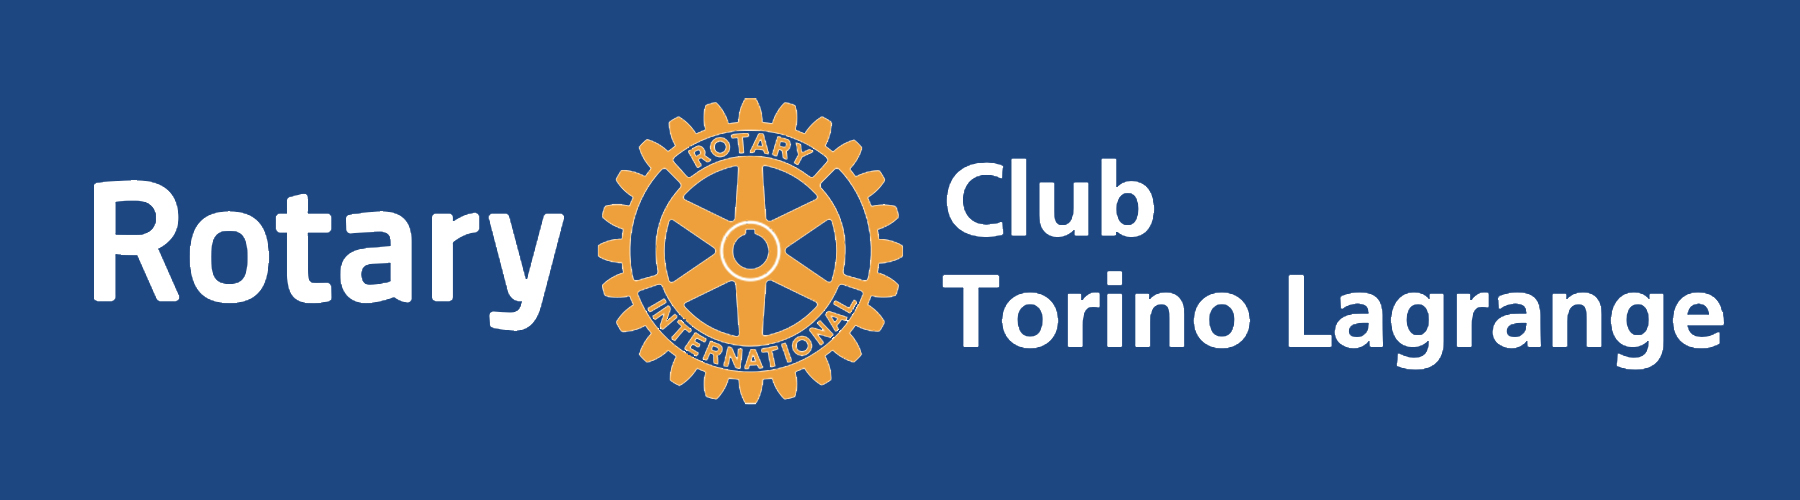 Si ufficializza oggi l’importante collaborazione tra Rotary Torino Lagrange e Comune di Torino a sostegno della scuola e delle nuove generazioni